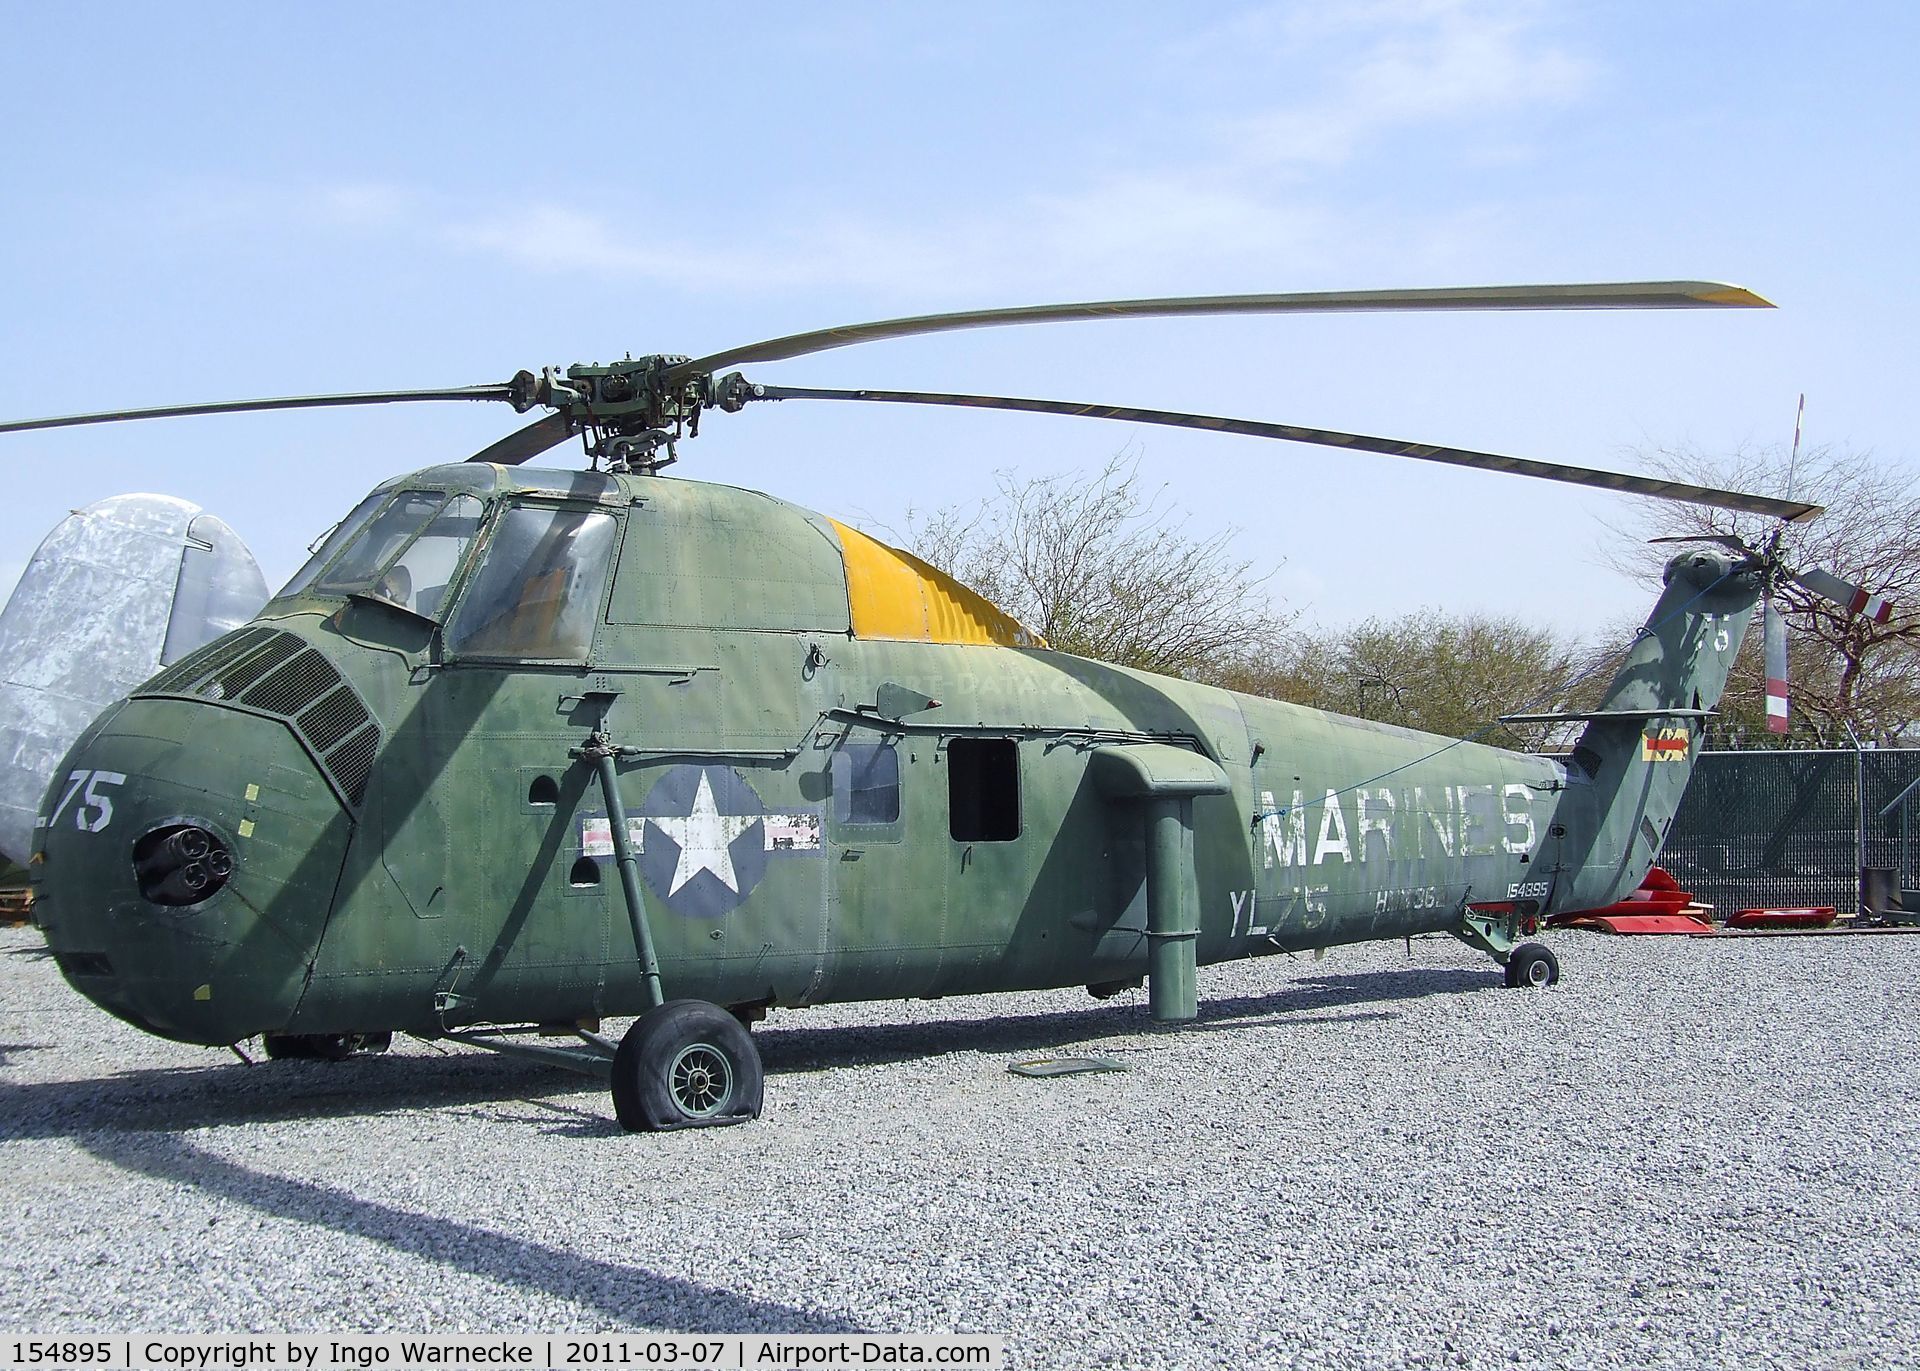 154895, Sikorsky UH-34D Seahorse C/N 58-1805, Sikorsky UH-34D Seahorse at the Palm Springs Air Museum, Palm Springs CA